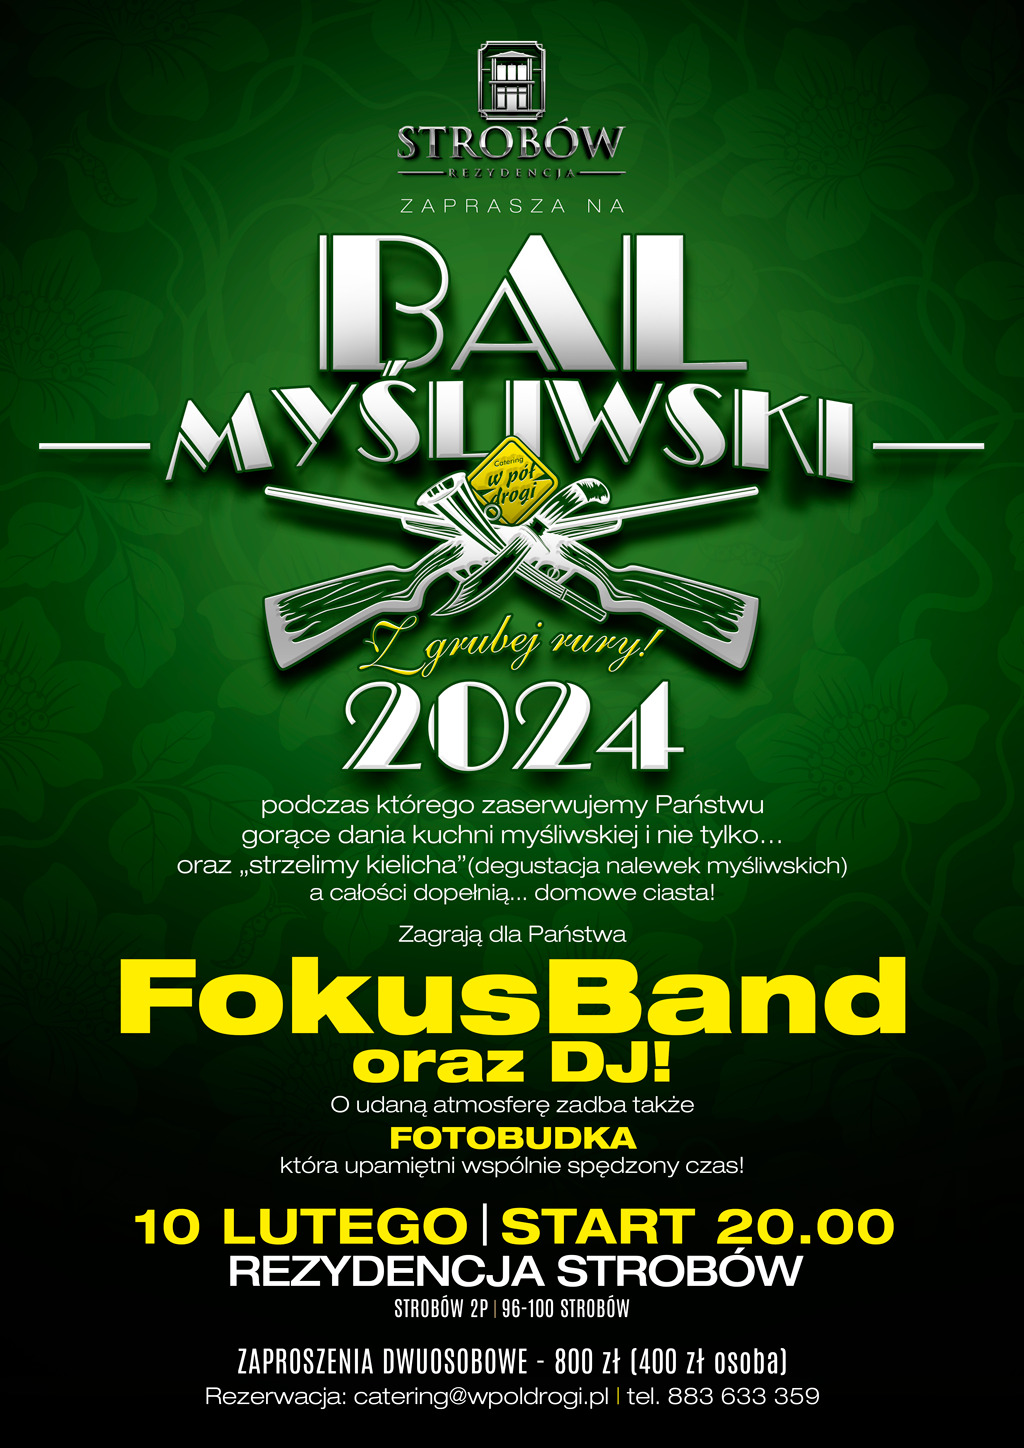 Plakat Bal Myśliwski 2024